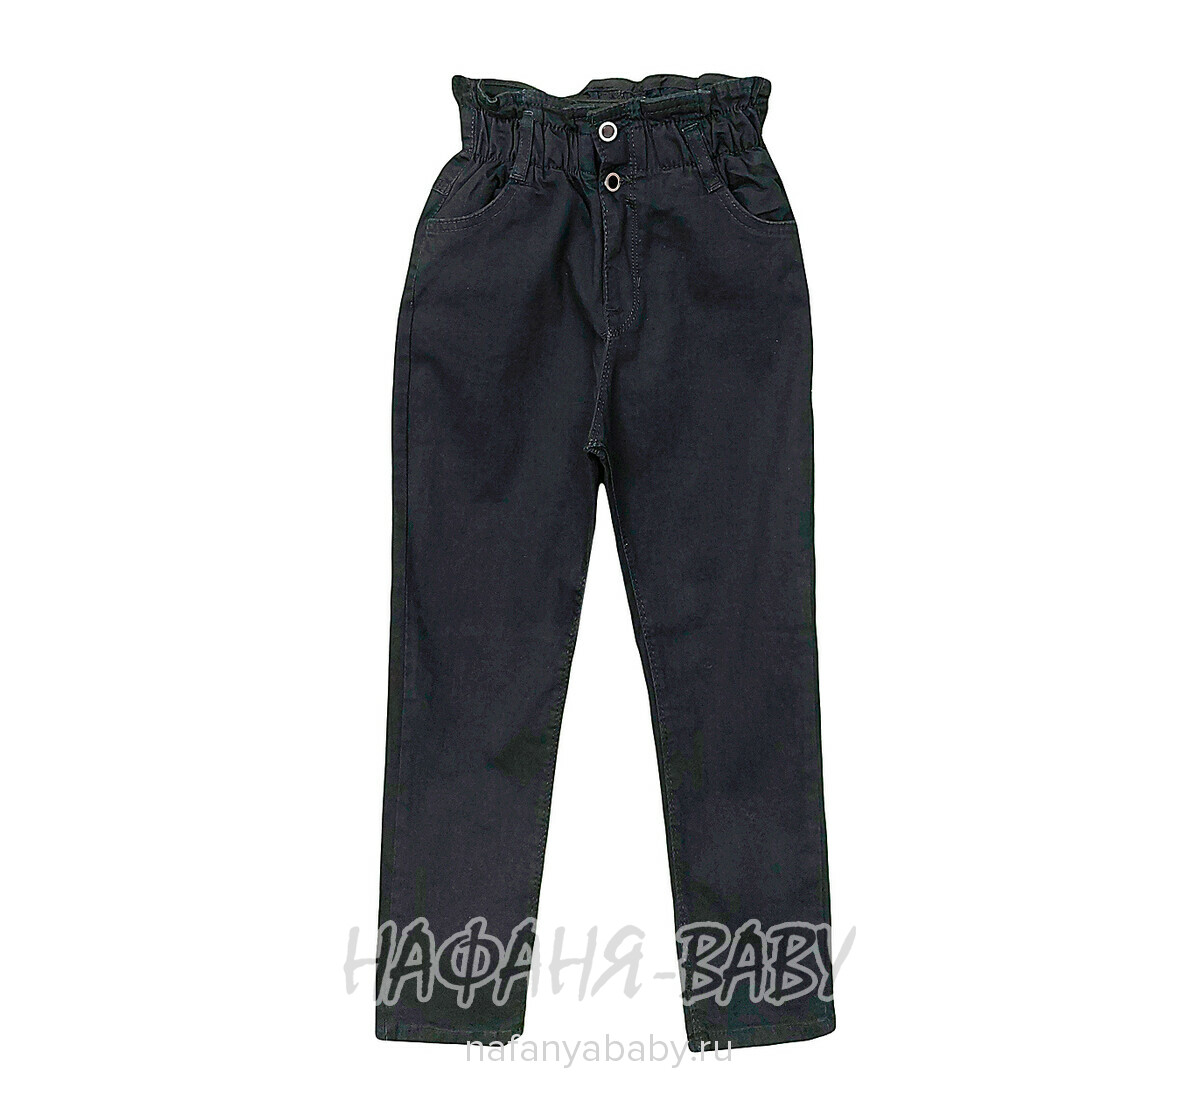 Джинсы подростковые ELEYSA Jeans арт: 6136, 8-12 лет, цвет черный, оптом Турция